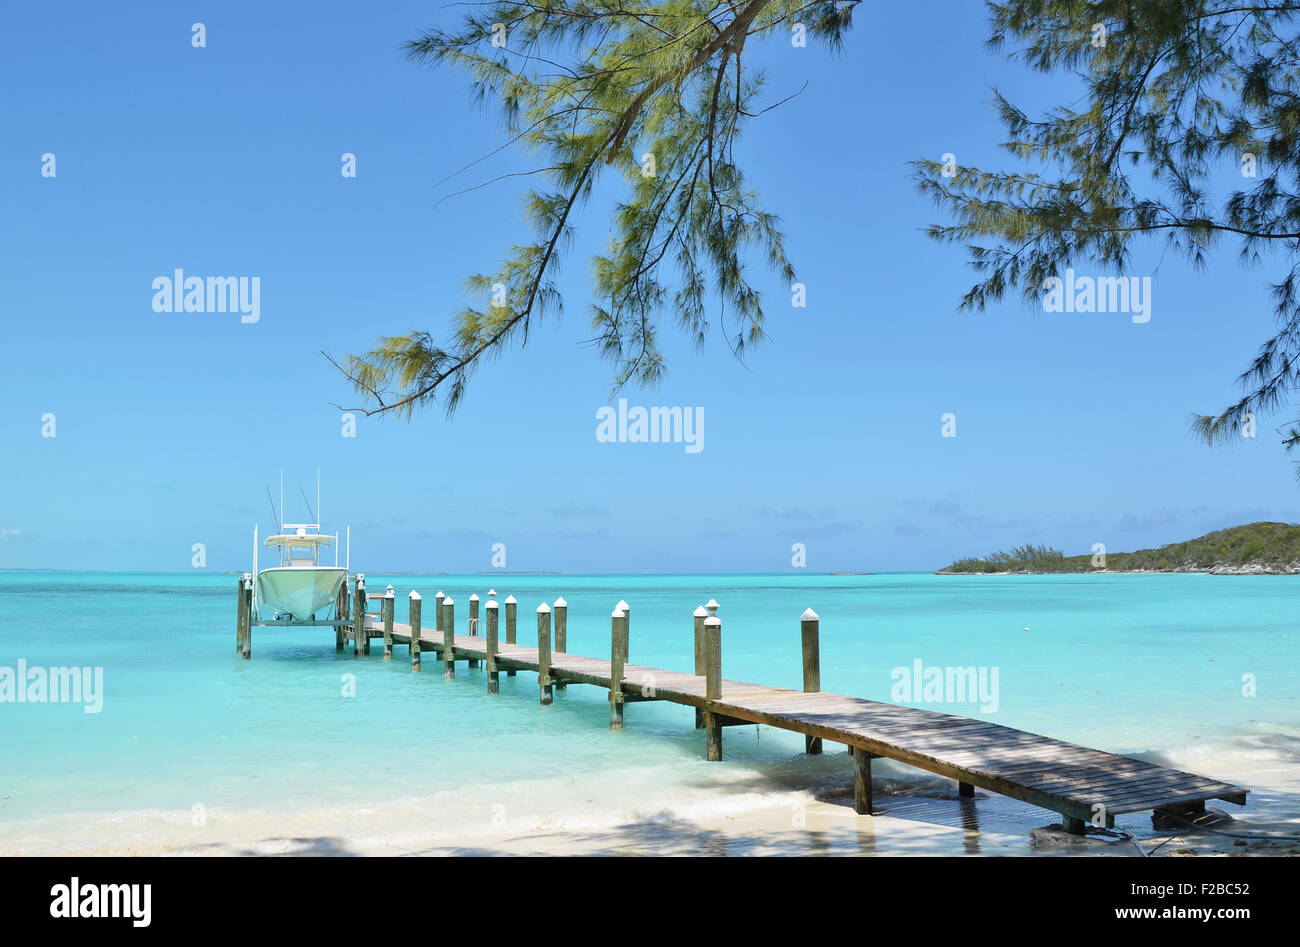 Yacht at the wooden jetty. Exuma, Bahamas Stock Photo